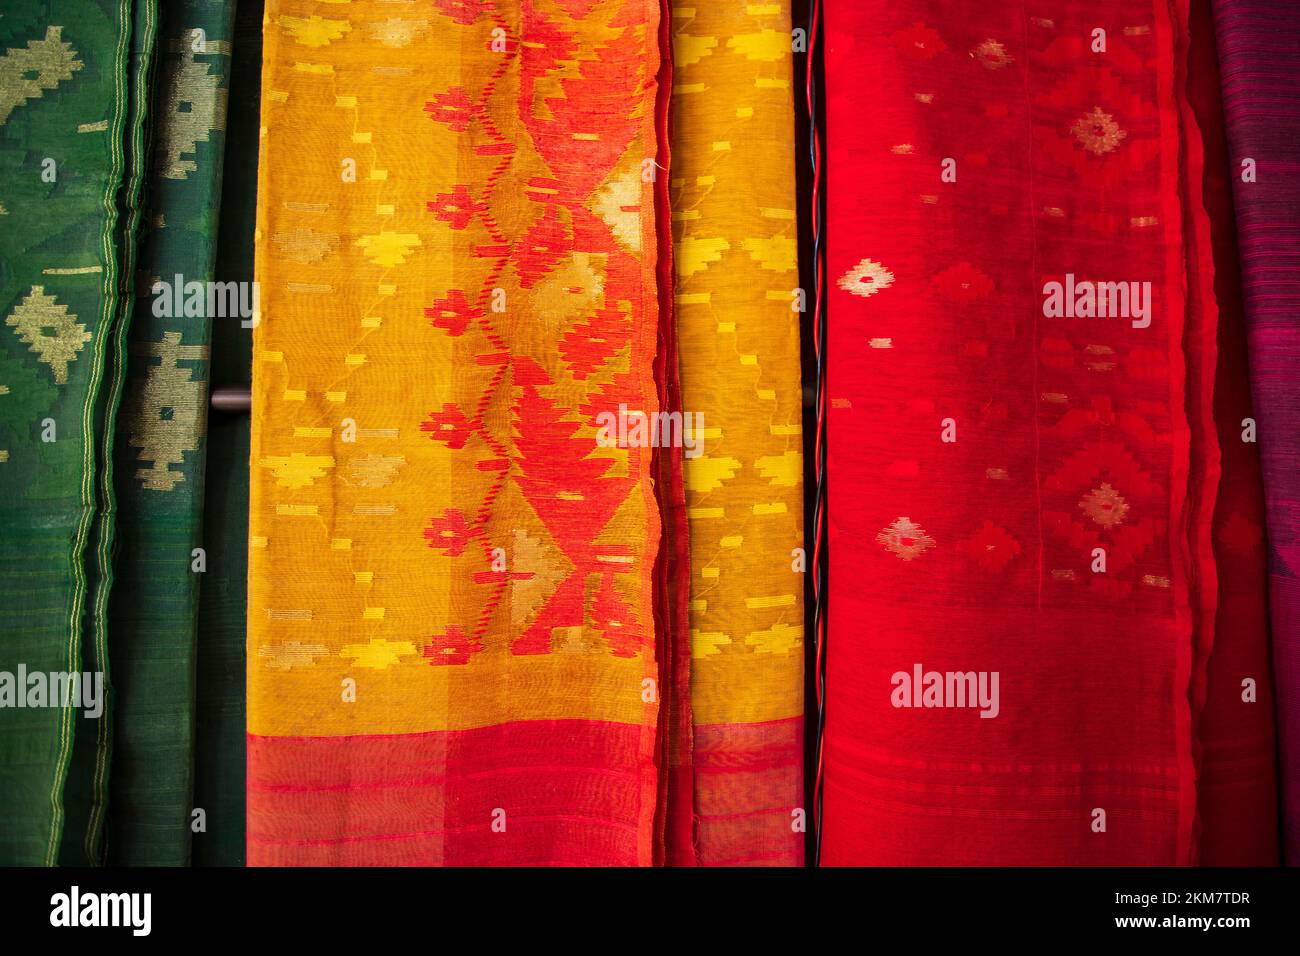 Bangladeshi Women, der traditionelle, farbenfrohe Jamdani-Saree, der in den Ausstellungsräumen des Einzelhandels hängt. Farbenfroher Jamdani Saree-Hintergrund Stockfoto